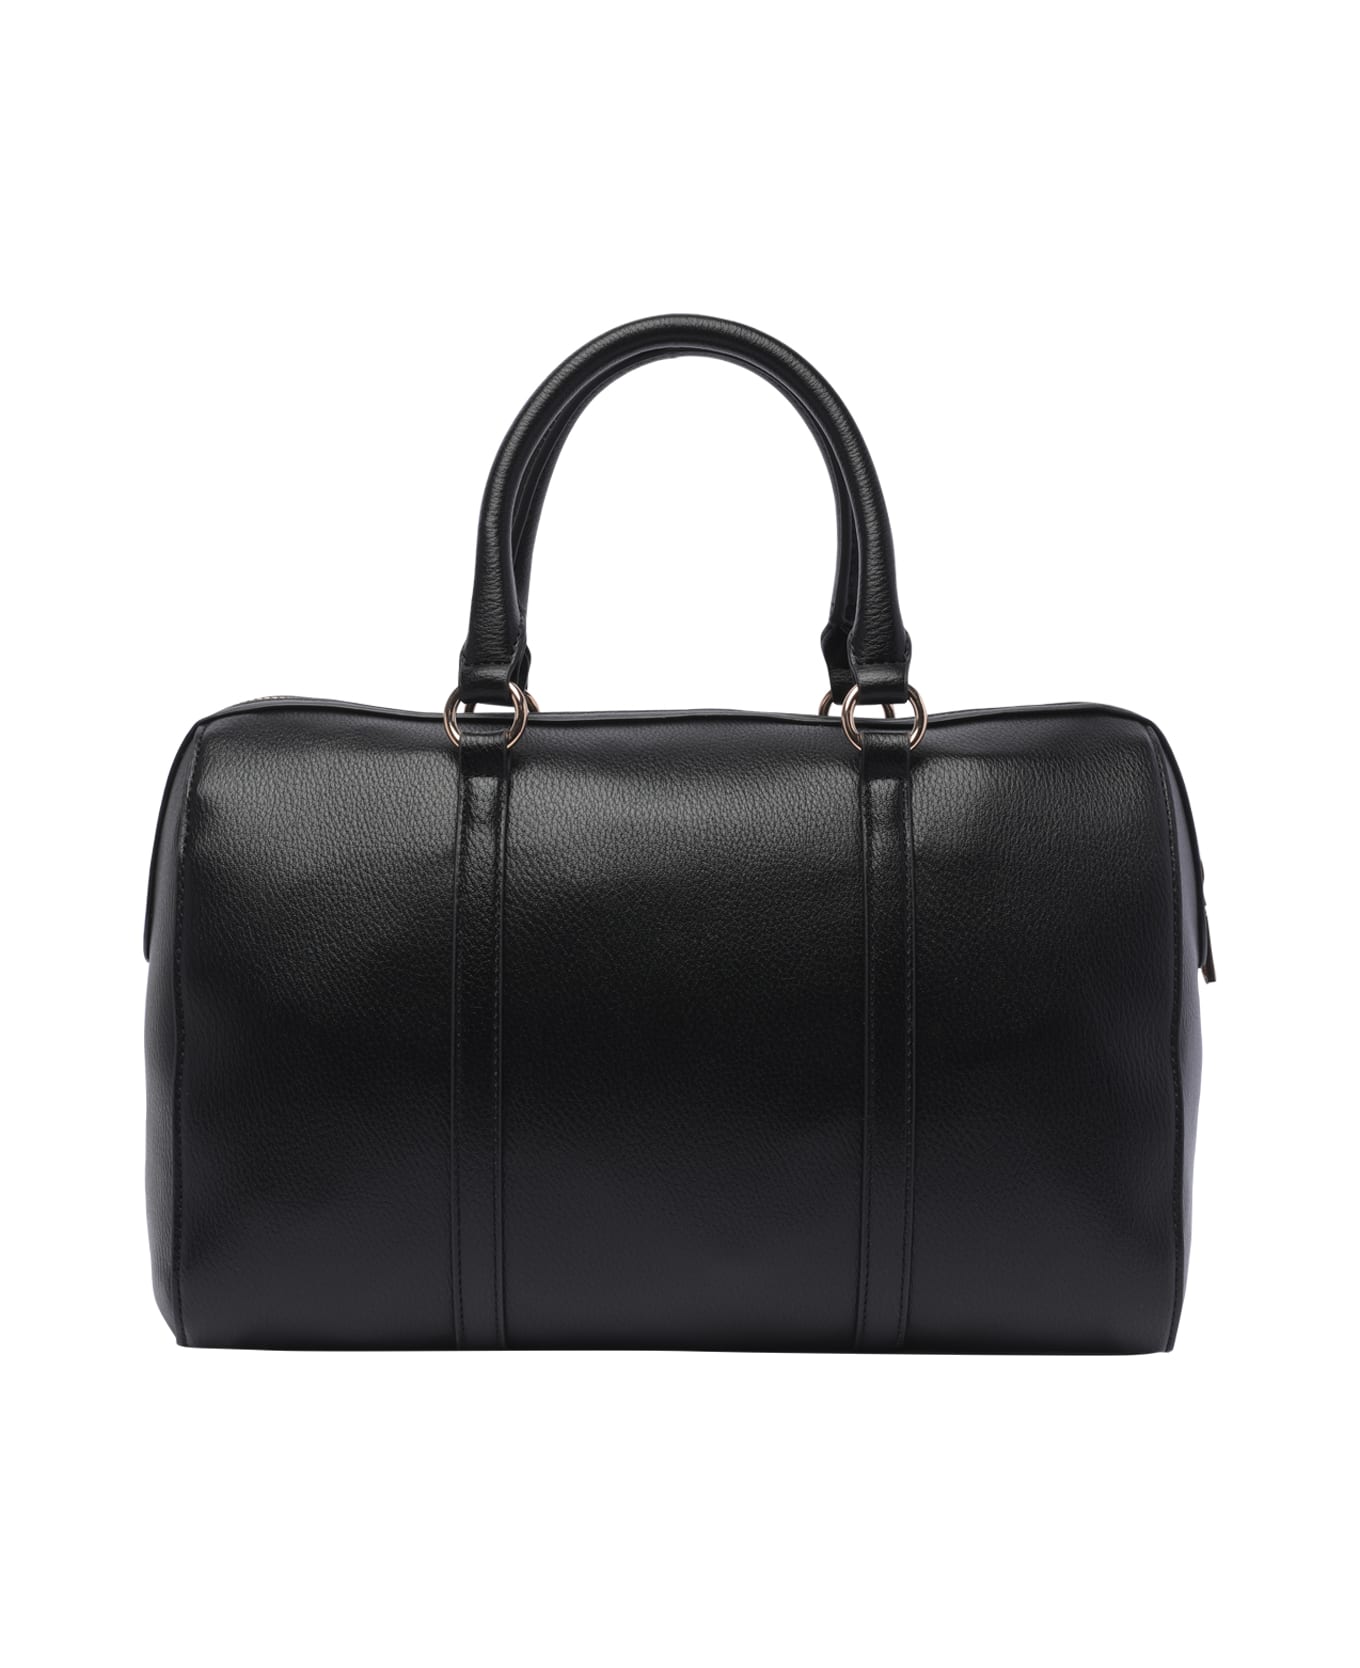 Liu-Jo Logo Handbag - Black